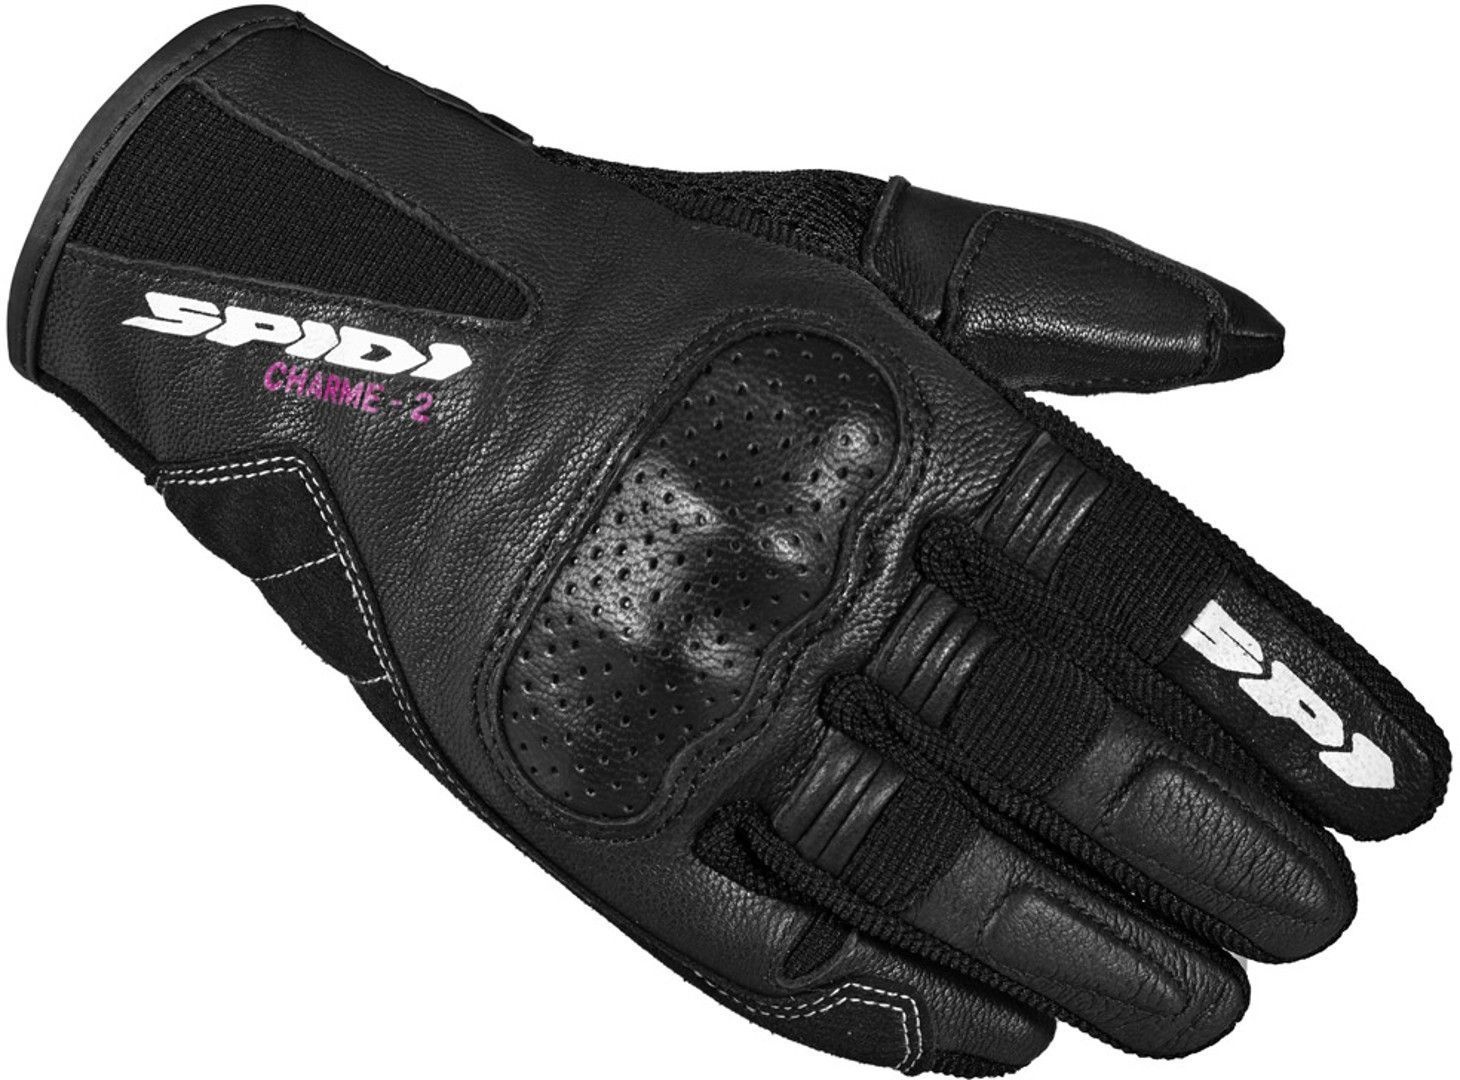 Spidi Charme 2 Damen Motorrad Handschuhe, schwarz-weiss, Größe S